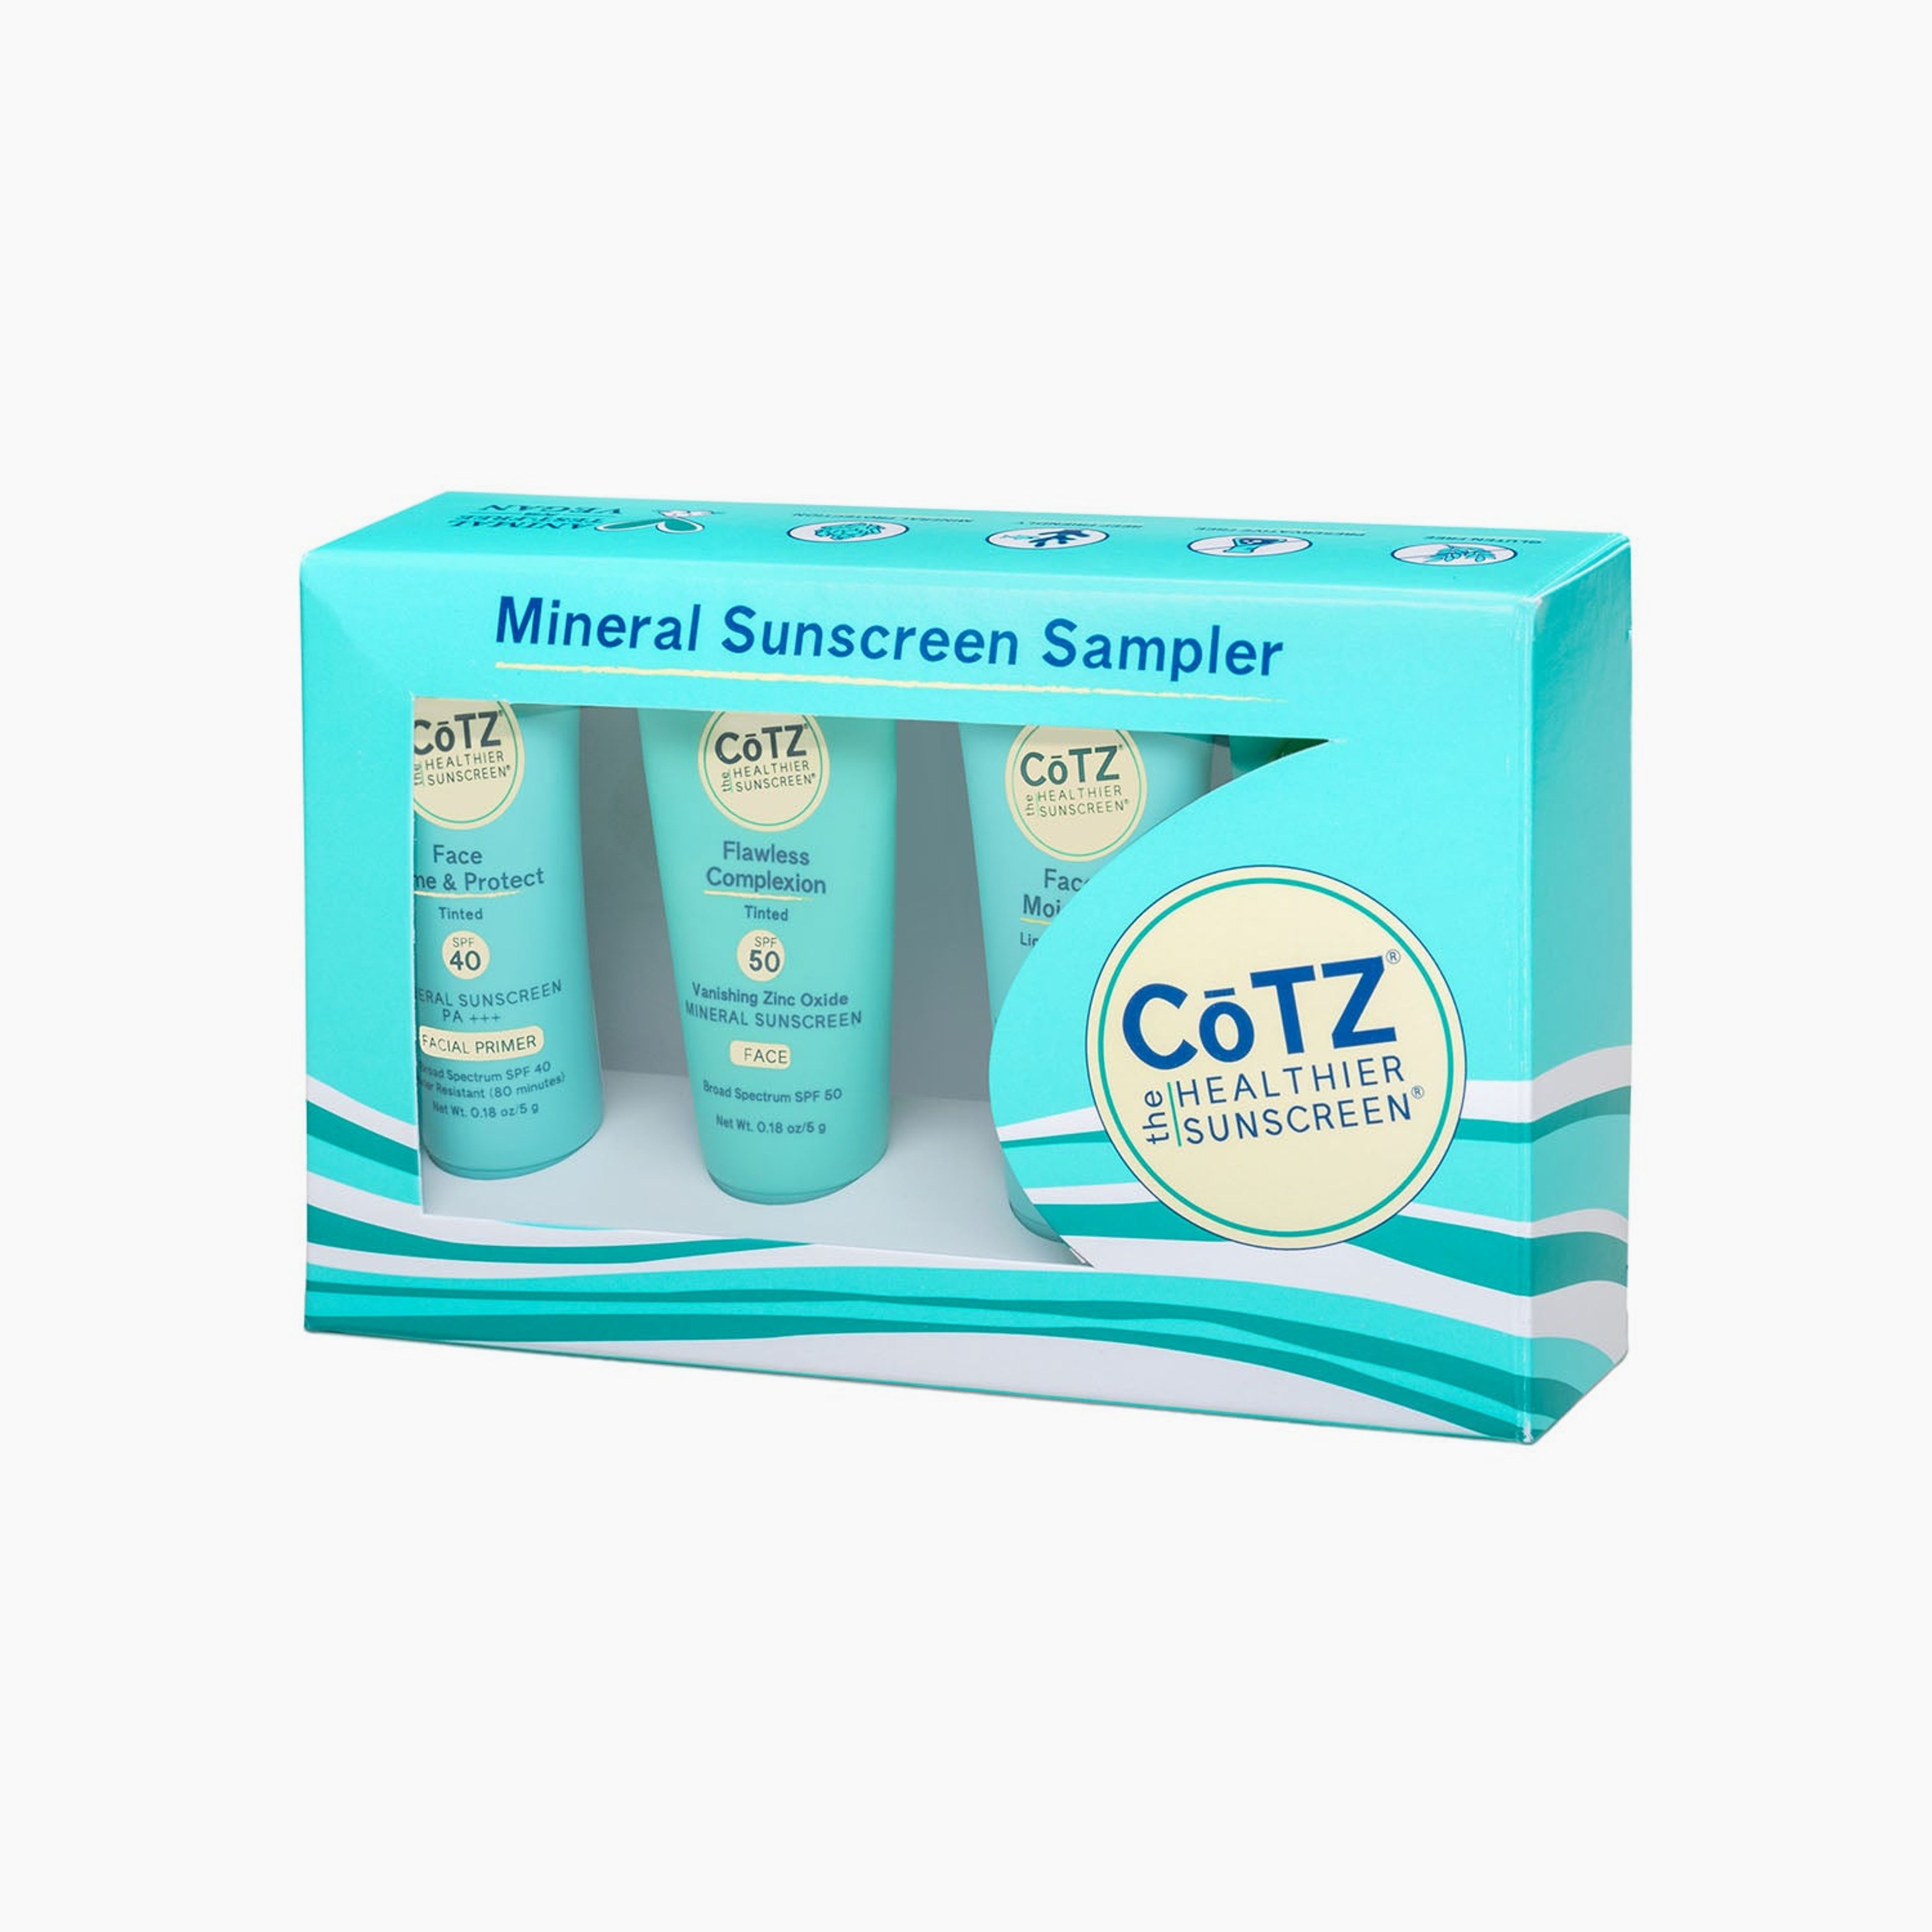 CoTZ Mineral Sunscreen Sampler